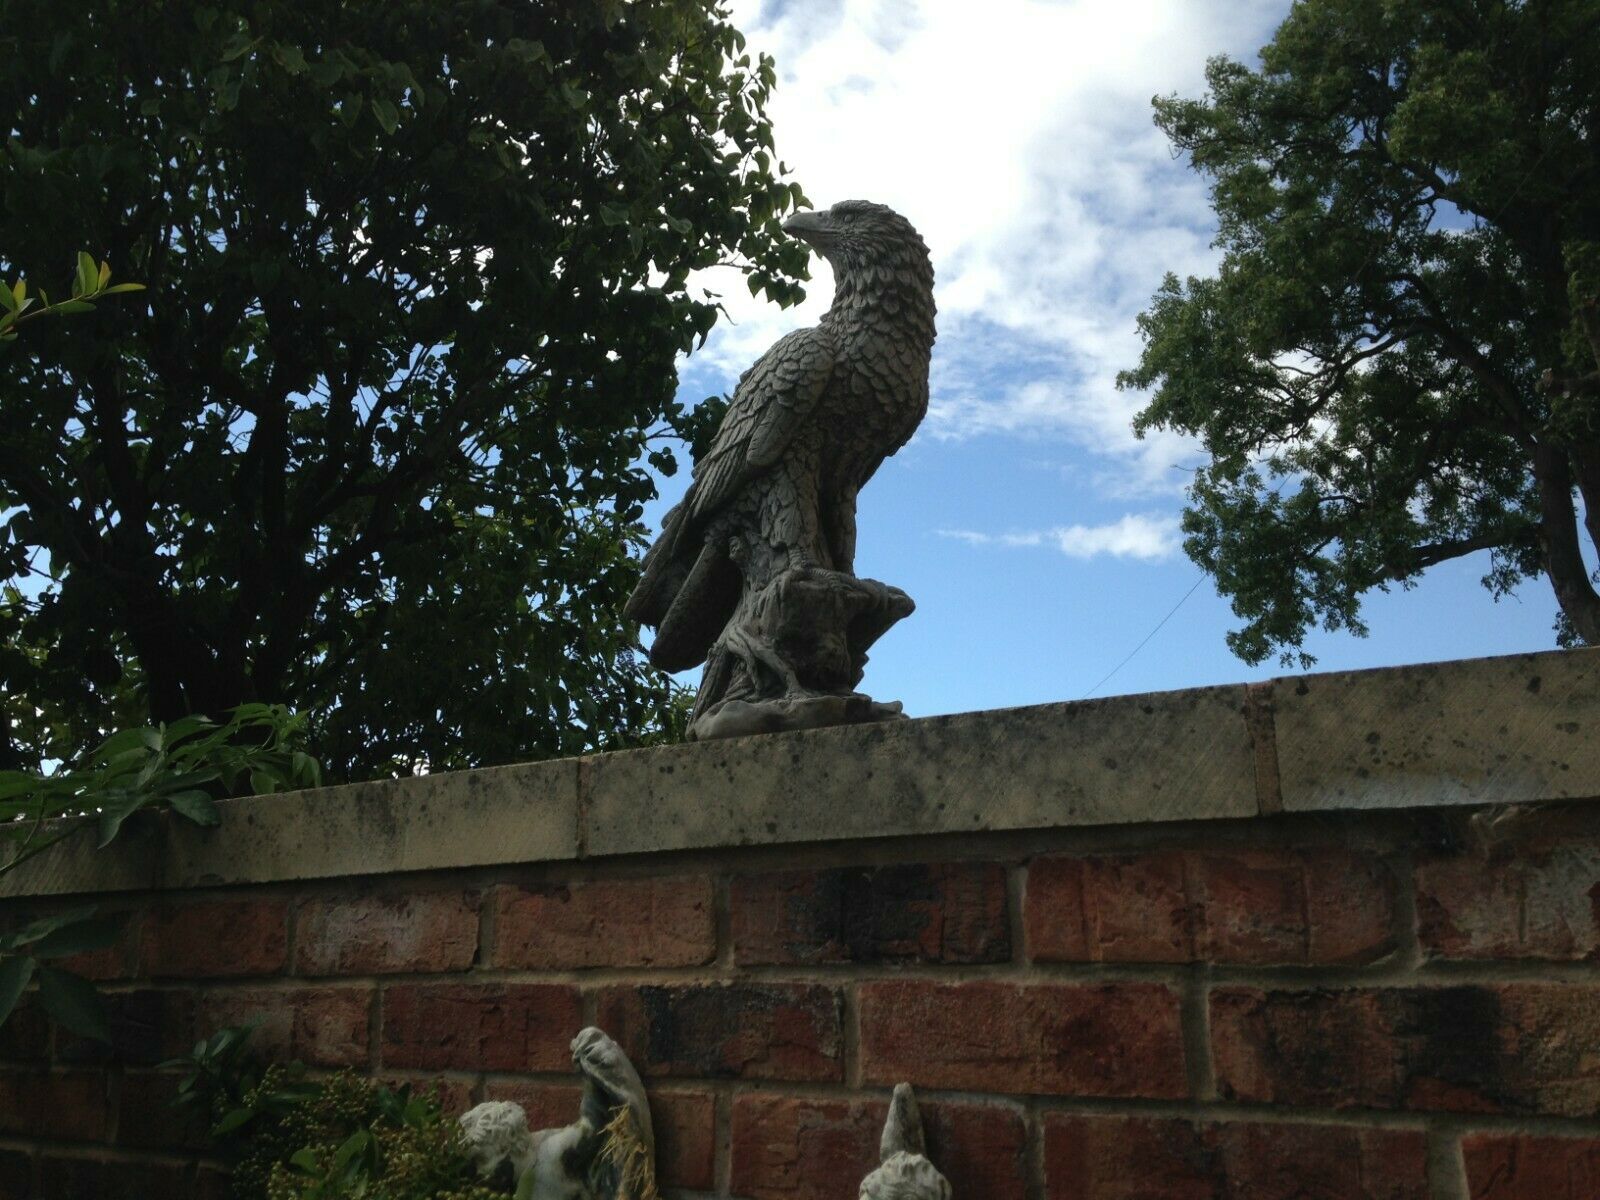 Stone Perched Eagle Ornament